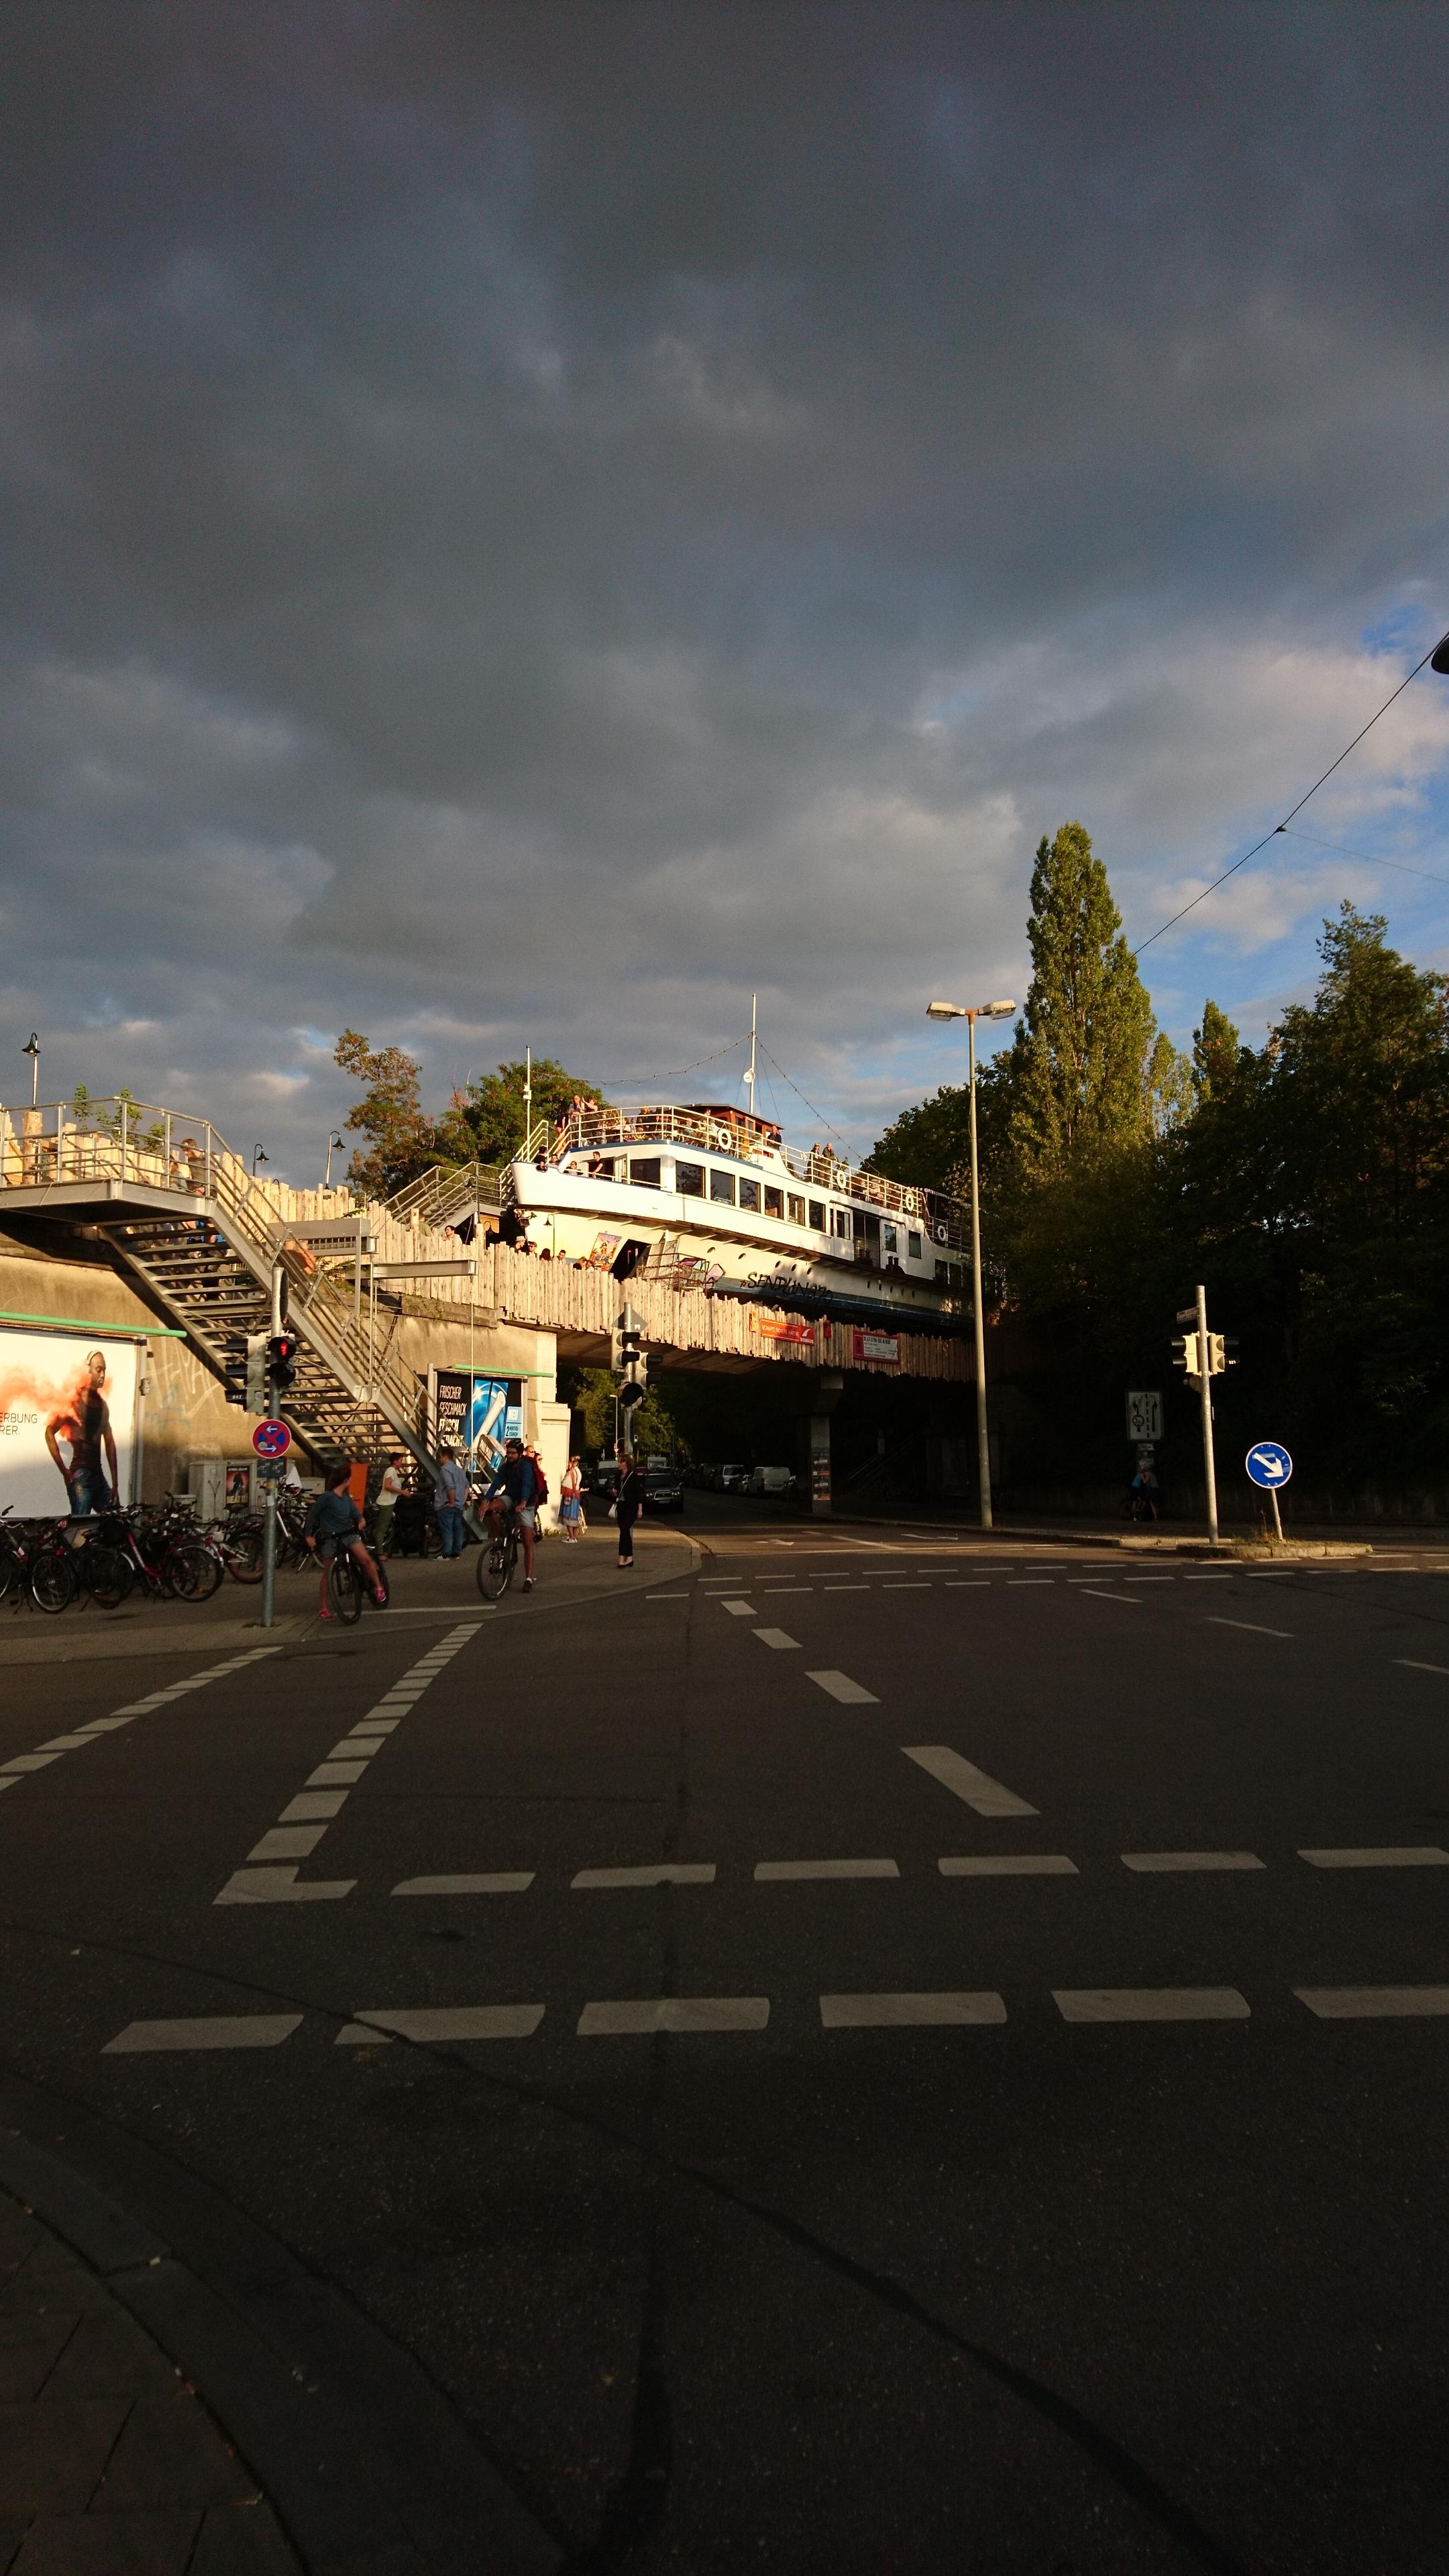 #upcycling de luxe 🚢

Ausgedienter Ausflugsdampfer wurde auf stillgelegter Eisenbahnbrücke zu neuem Leben erweckt. 